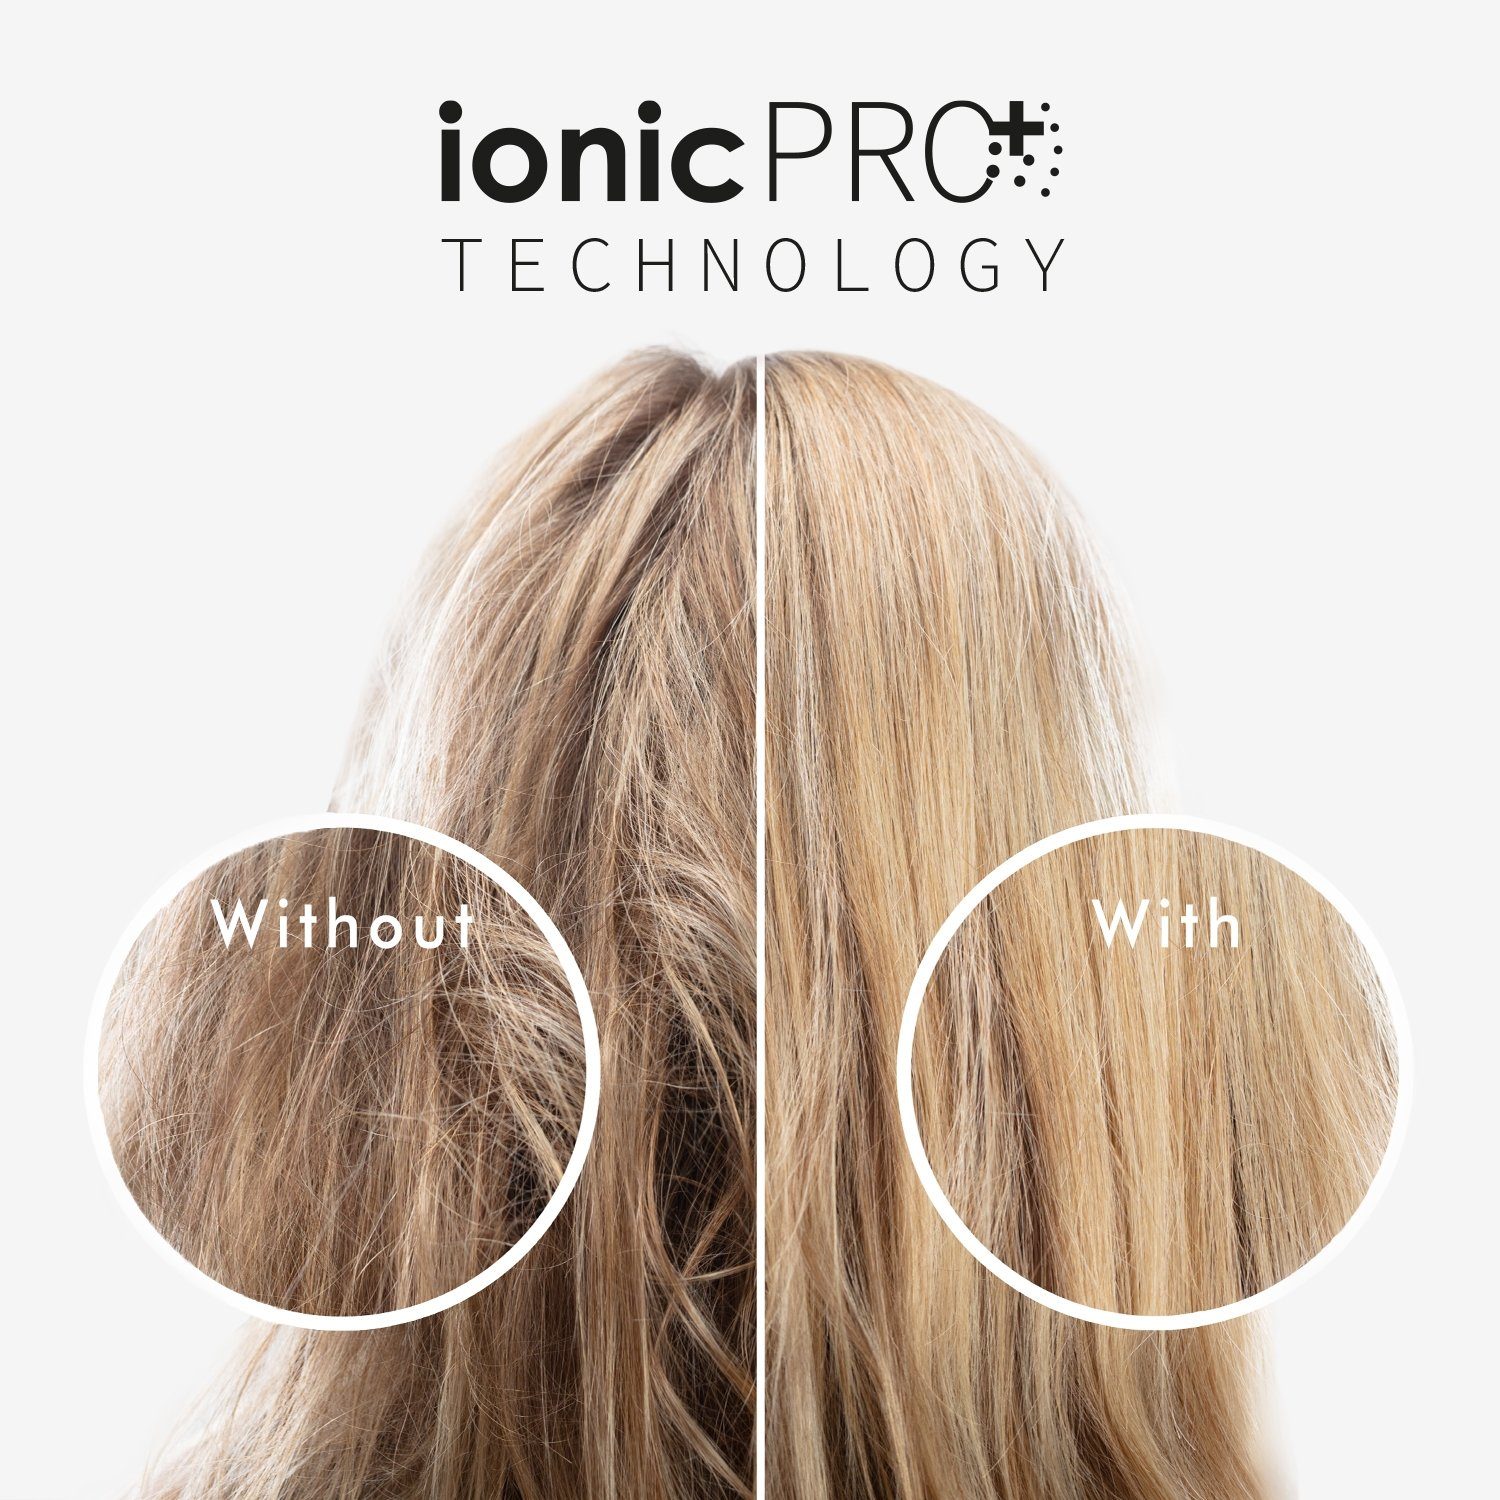 IonicPRO 2300 mehr weiß SWITZERLAND SOLIS Düse 440 W, Typ 50% Styling Kaltstufe Haartrockner Profi-Föhn, OF Luftdruck